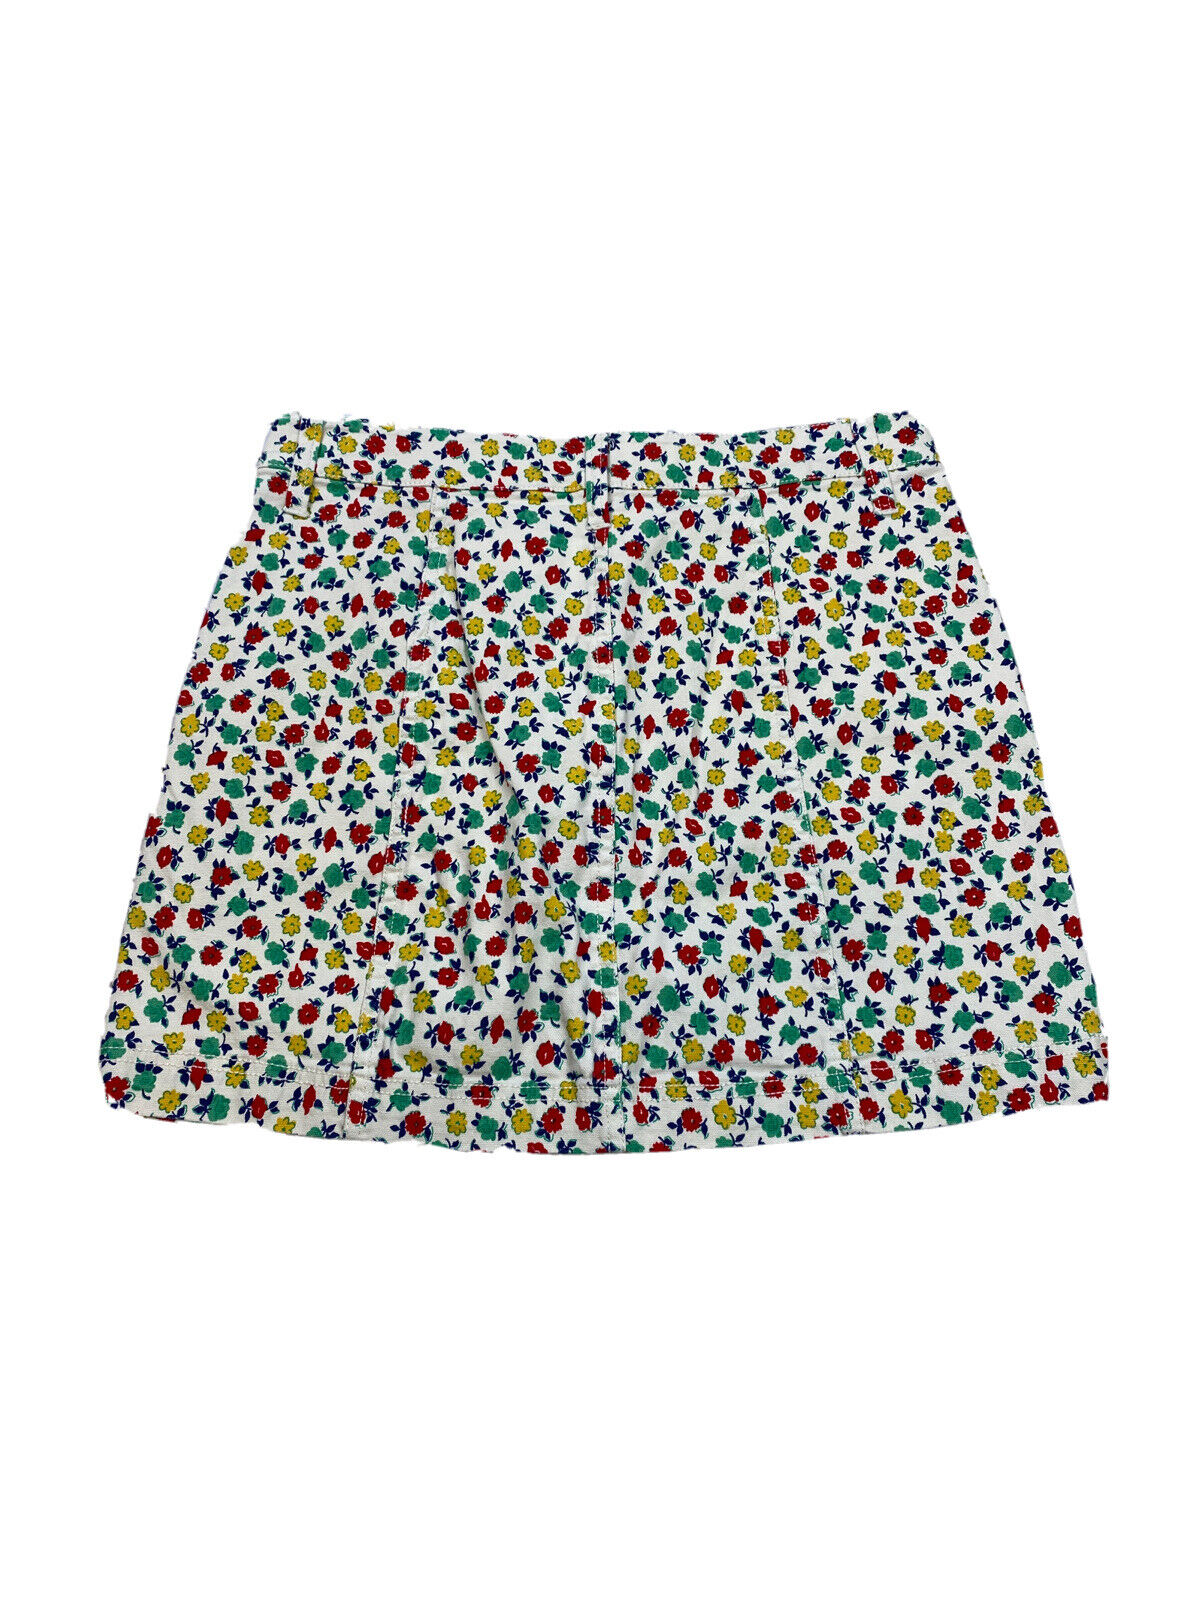 J. Crew Mercantile Women's Multi-Color Floral Button Up Mini Skirt - 4